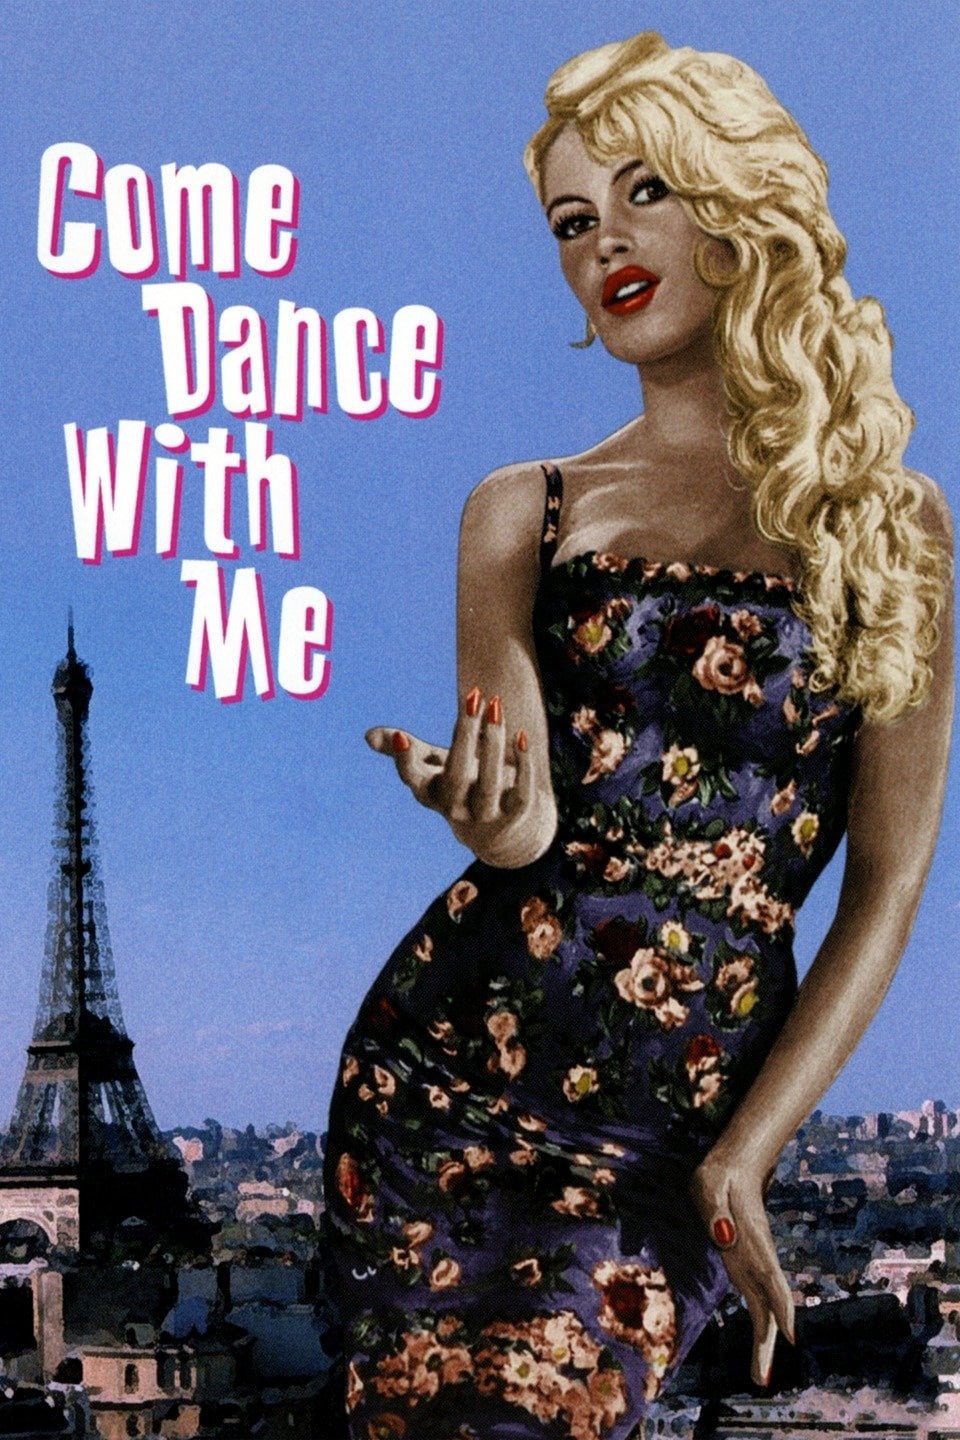 ¿Quiere usted bailar conmigo?